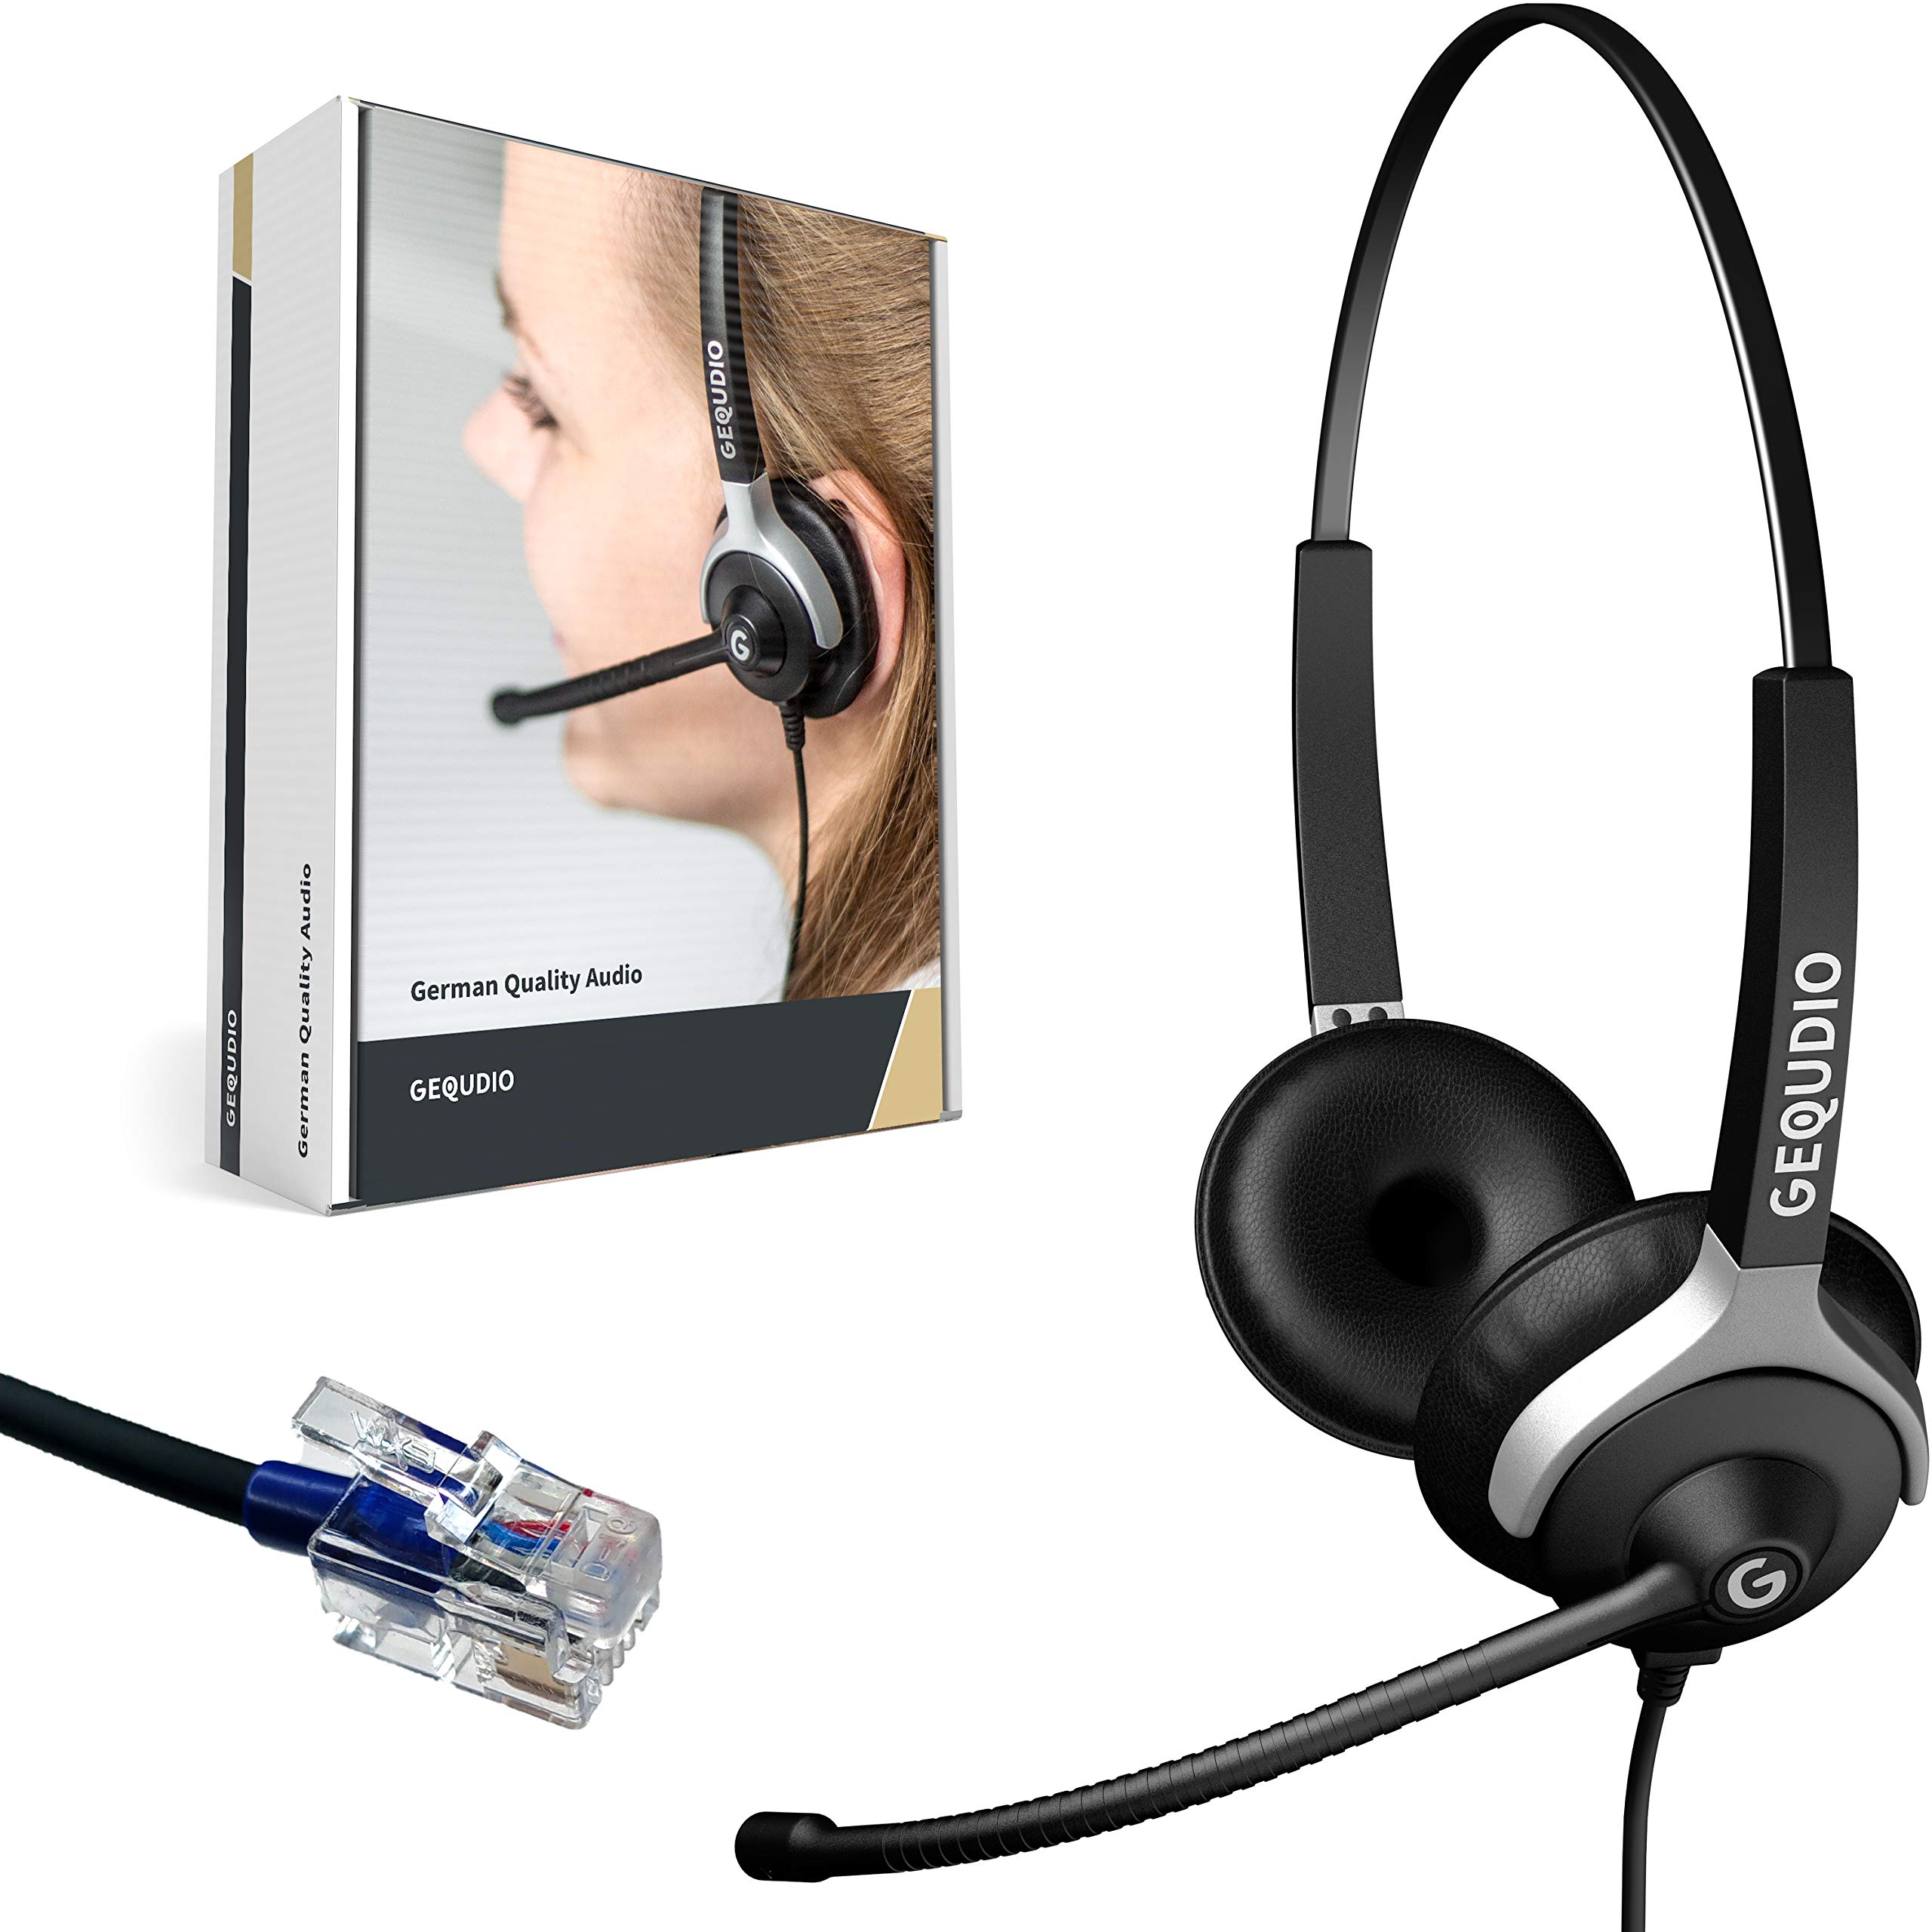 GEQUDIO Headset kompatibel mit Cisco Telefon - inklusive RJ Kabel - Kopfhörer & Mikrofon mit Ersatz Polster - Anschlusskabel flexibel wechselbar - besonders leicht 80g (2-Ohr)